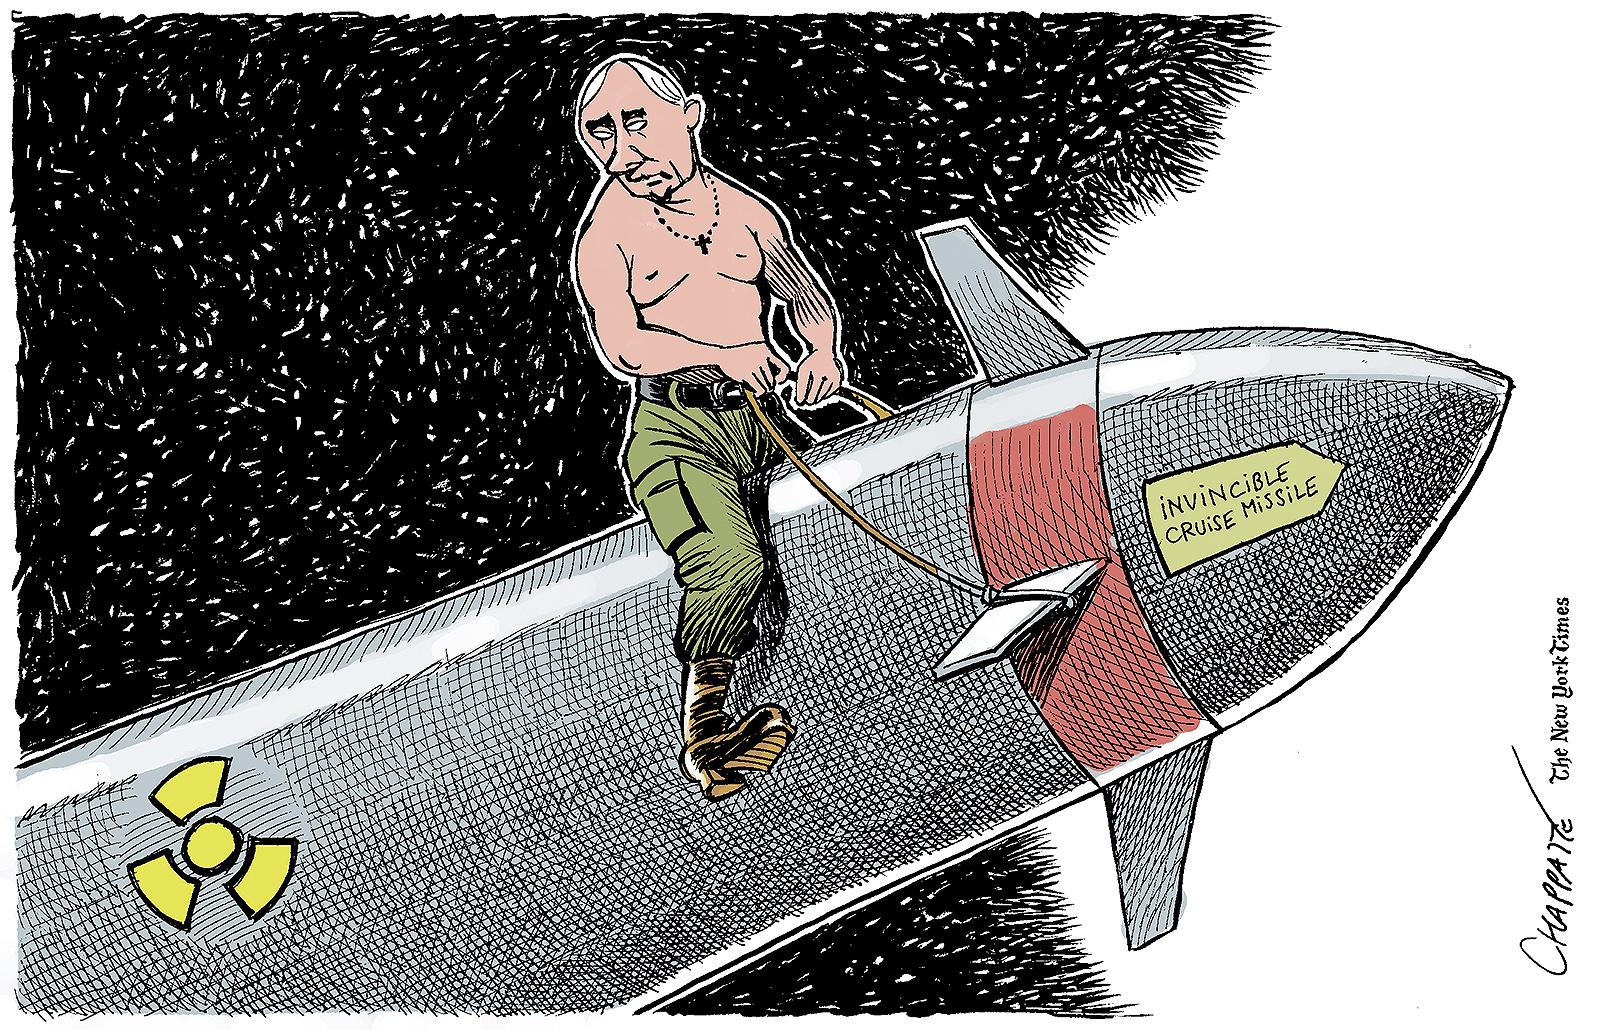 Russia’s new invincible nuke